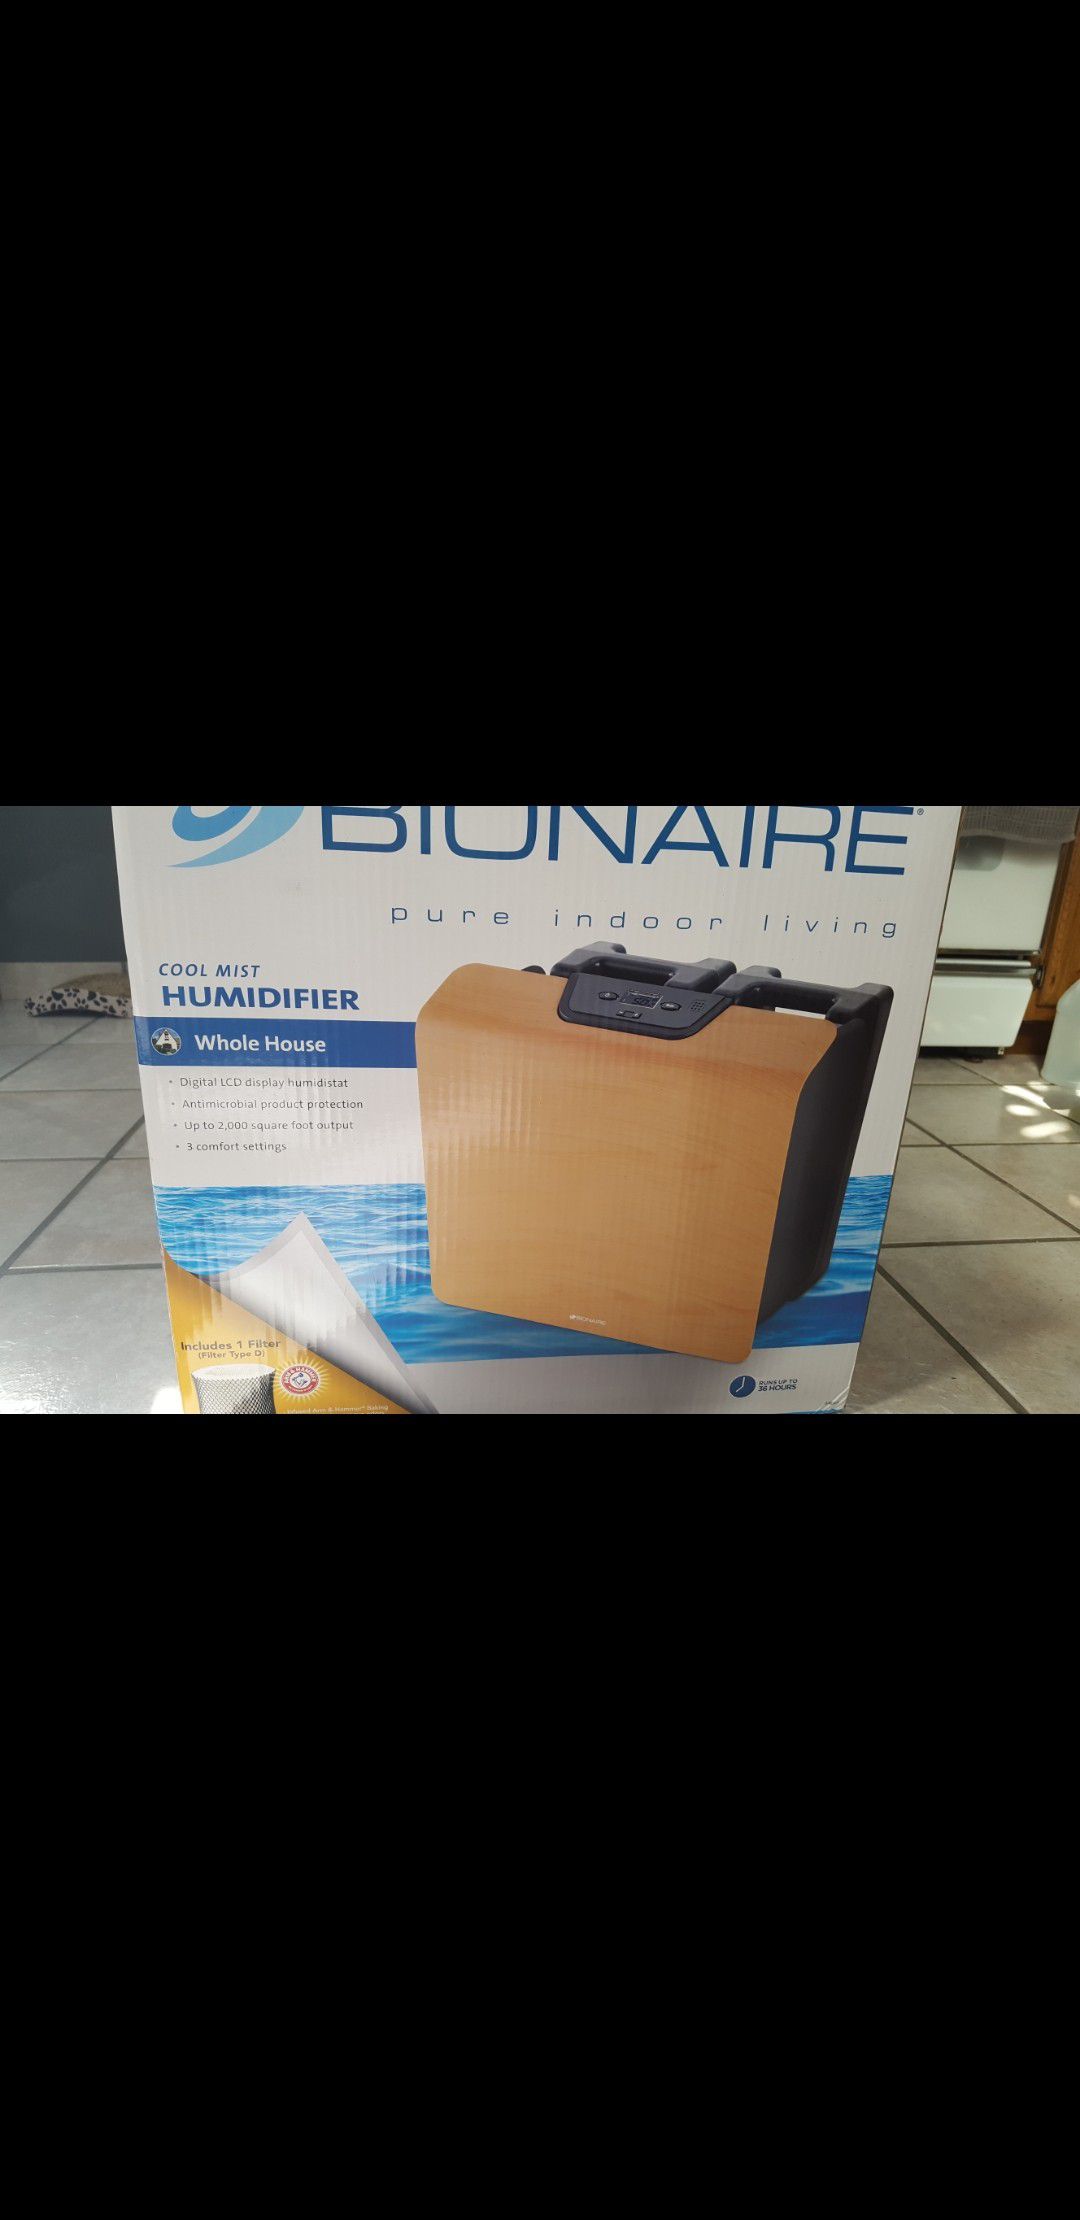 Bonaire whole house humidifier